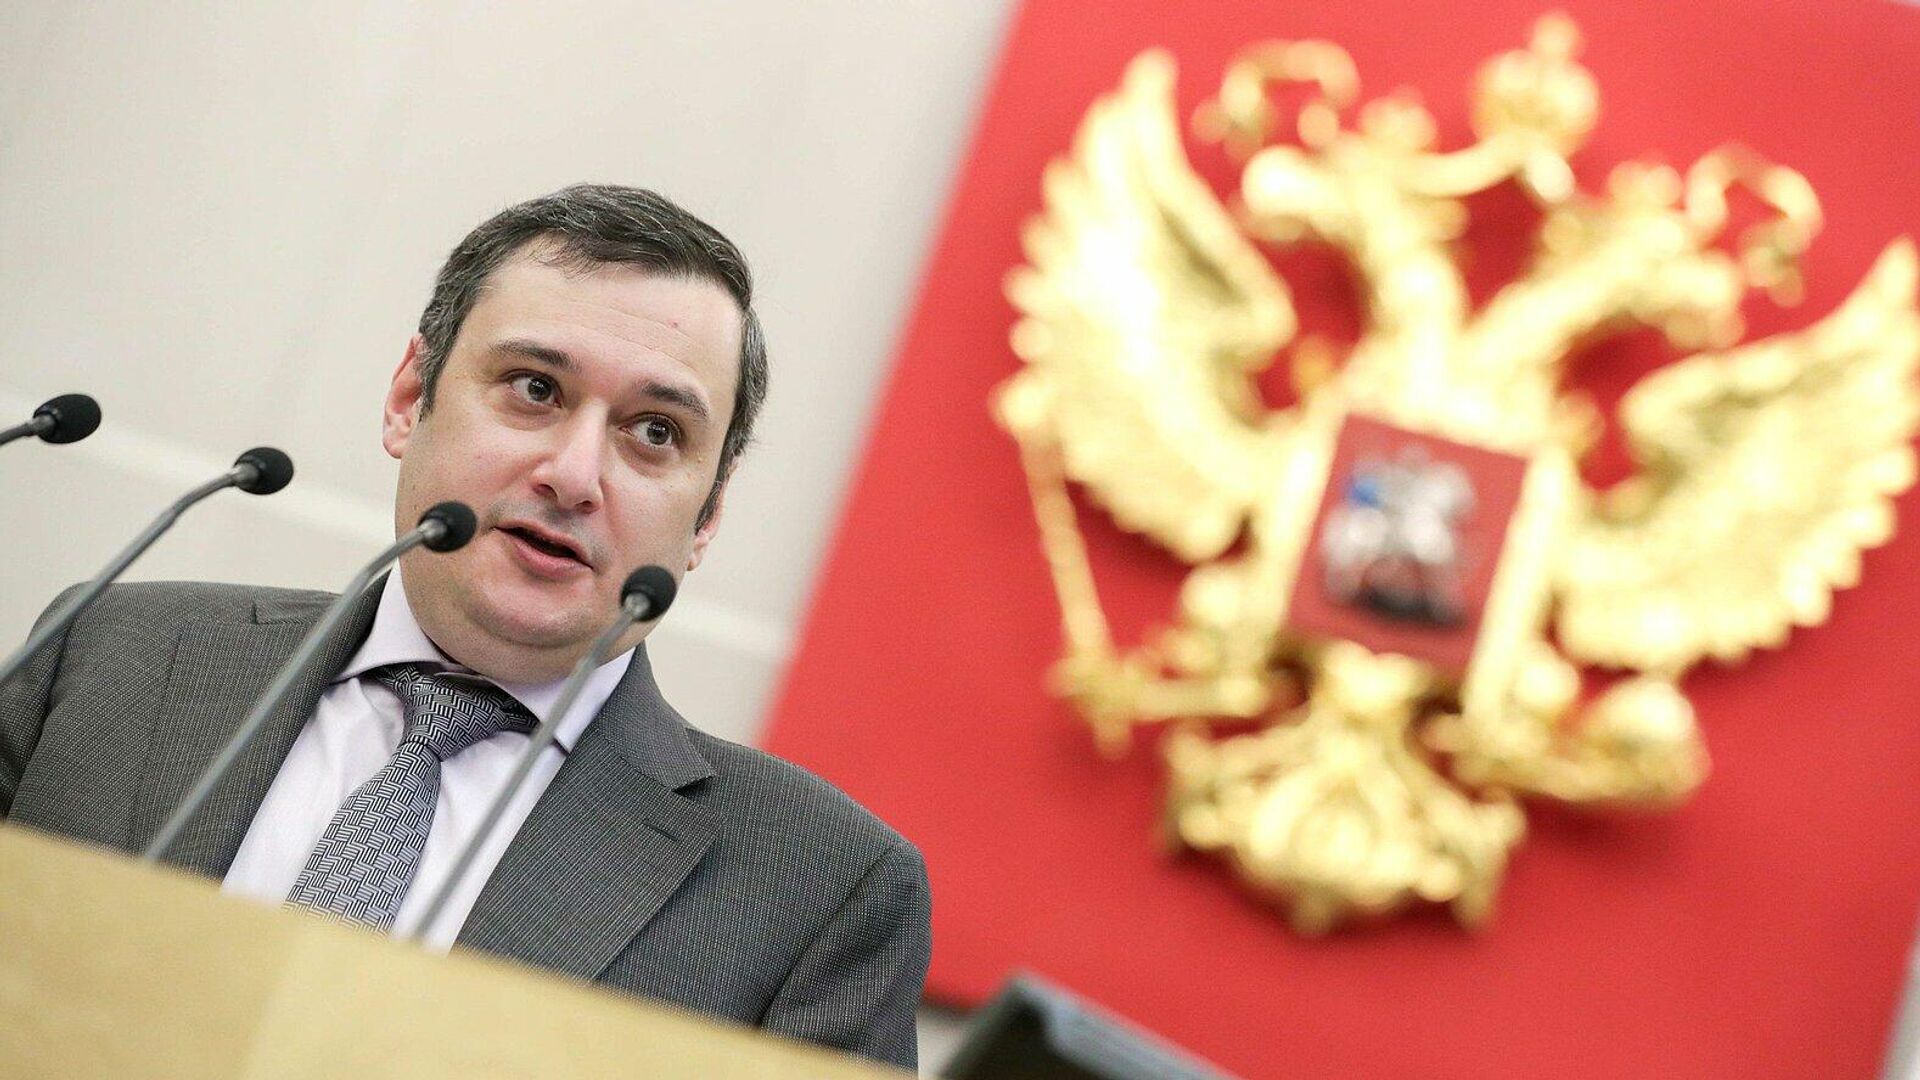 Курское отделение ЕР оценит поведение депутата на встрече с избирателями